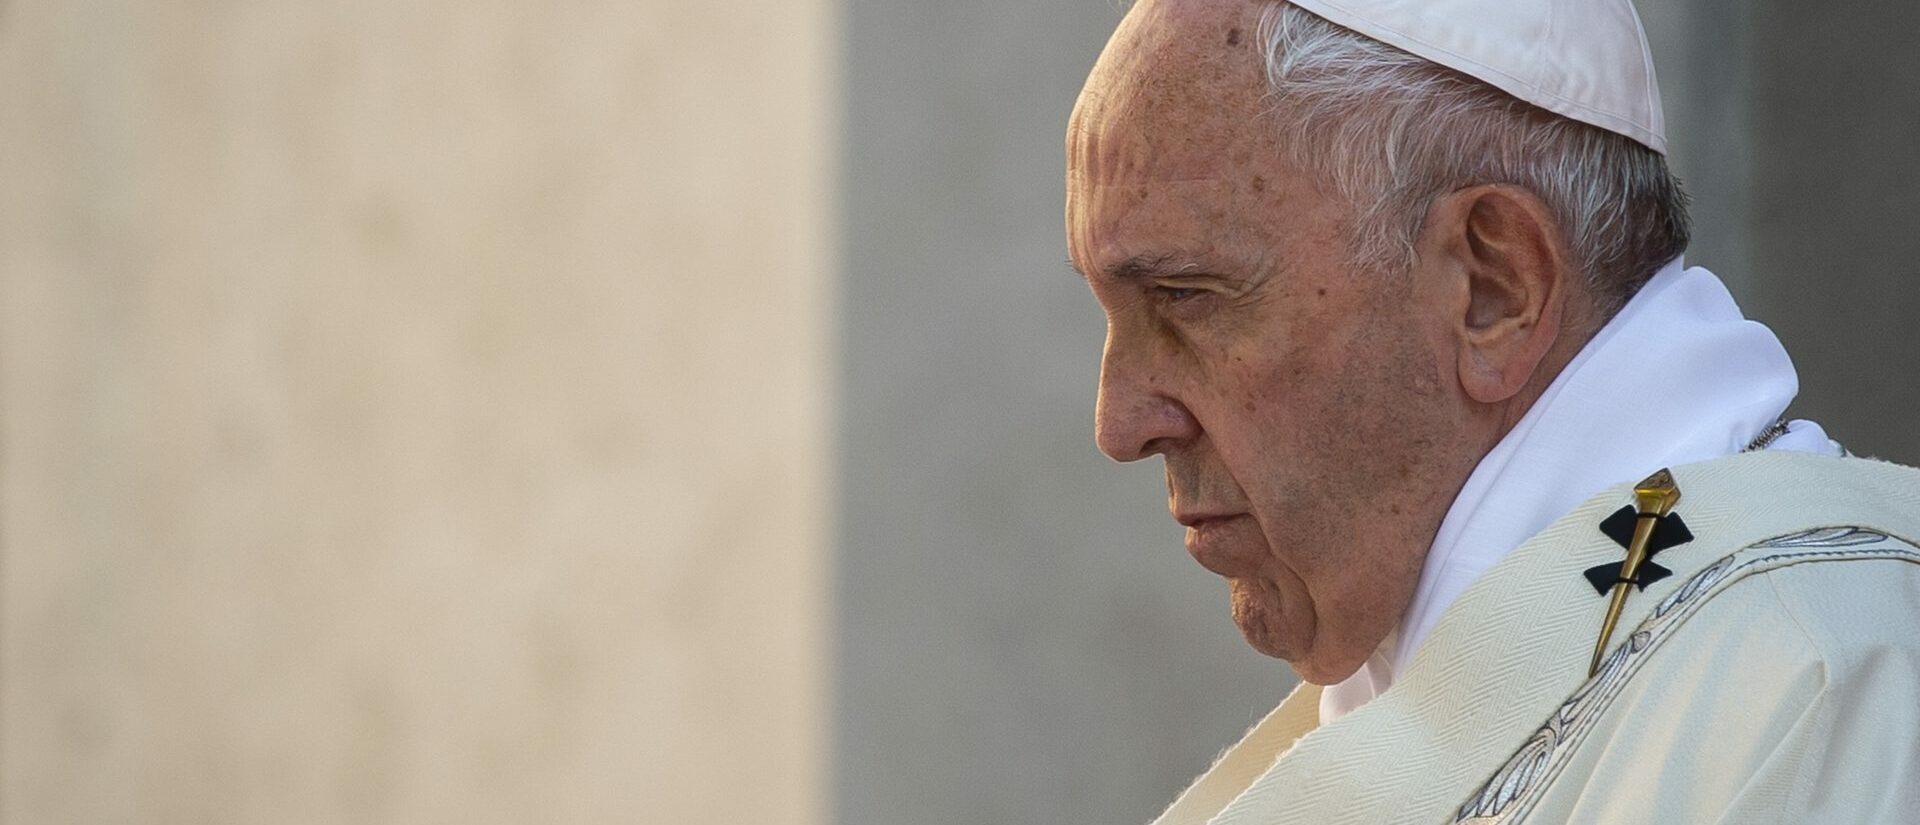 Le pape François s'inquiète de la résurgence de la violence en Irak  | photo d'illustration © Antoine Mekary/I.Media